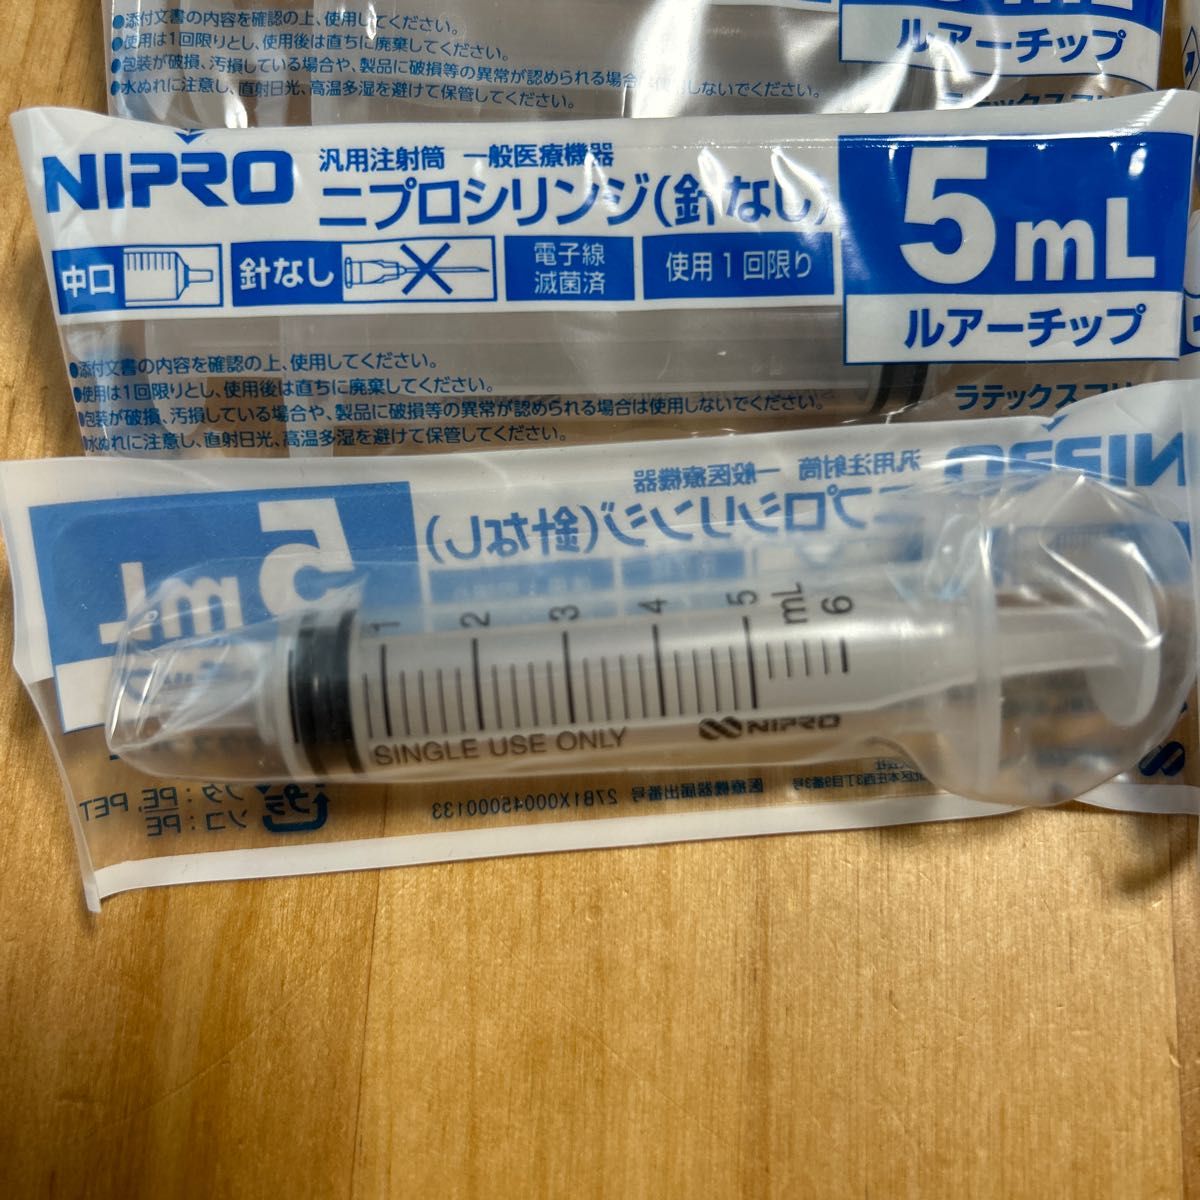 ニプロシリンジ 5ml 注射筒 一般医療機 ペット - その他